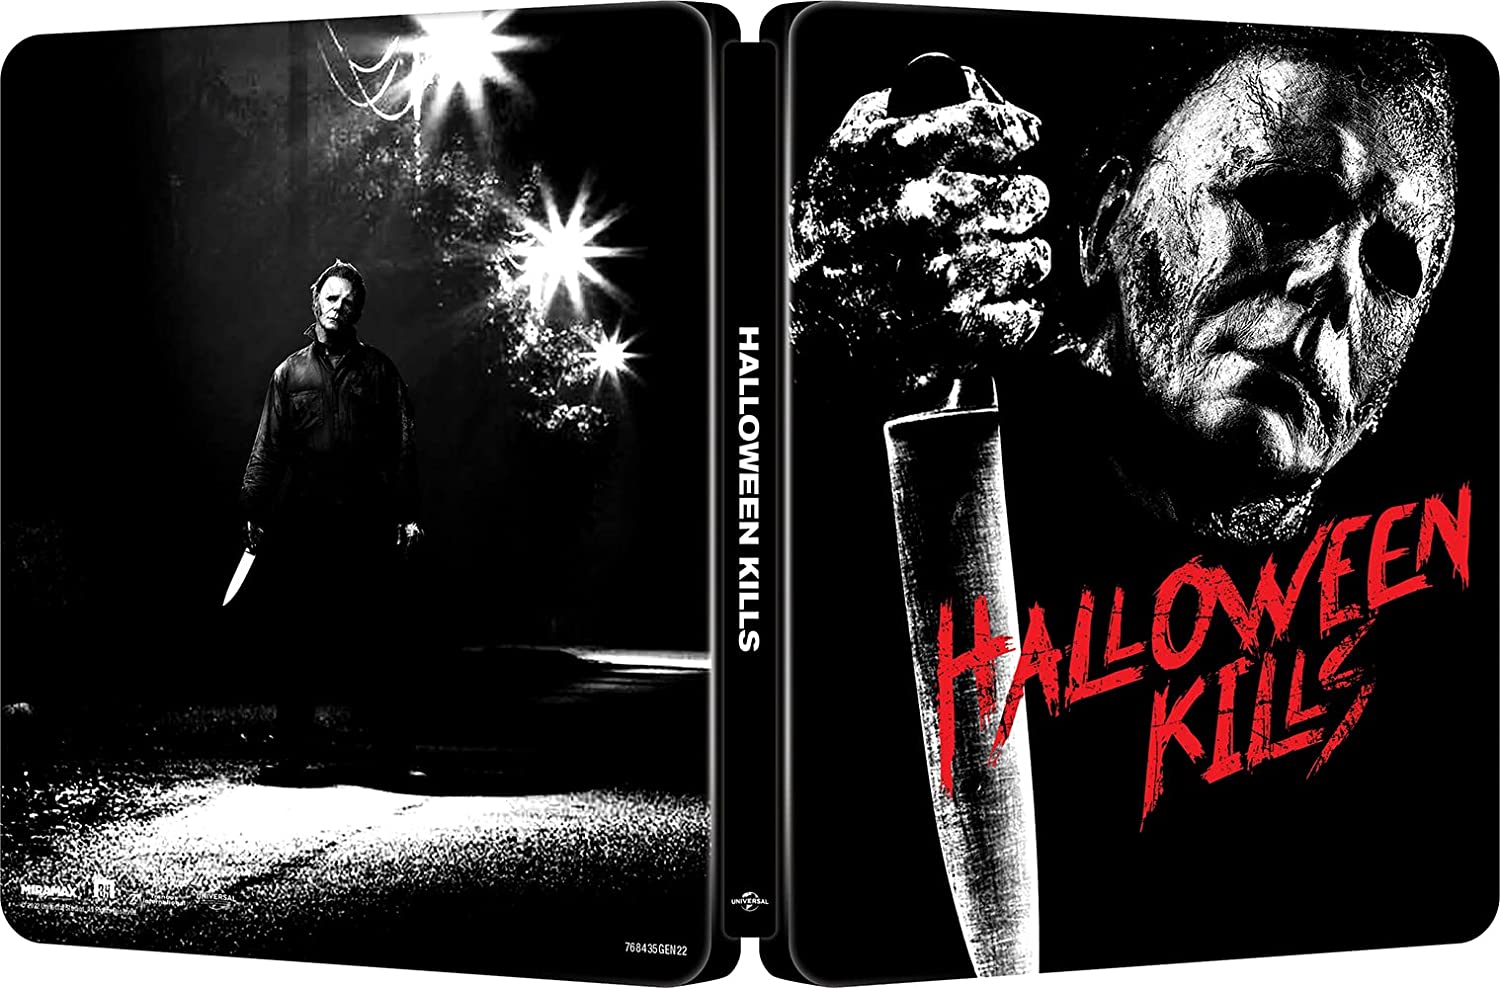 ハロウィン KILLS』の「4K Ultra HD+ブルーレイ」3／25(金)発売！セル ...